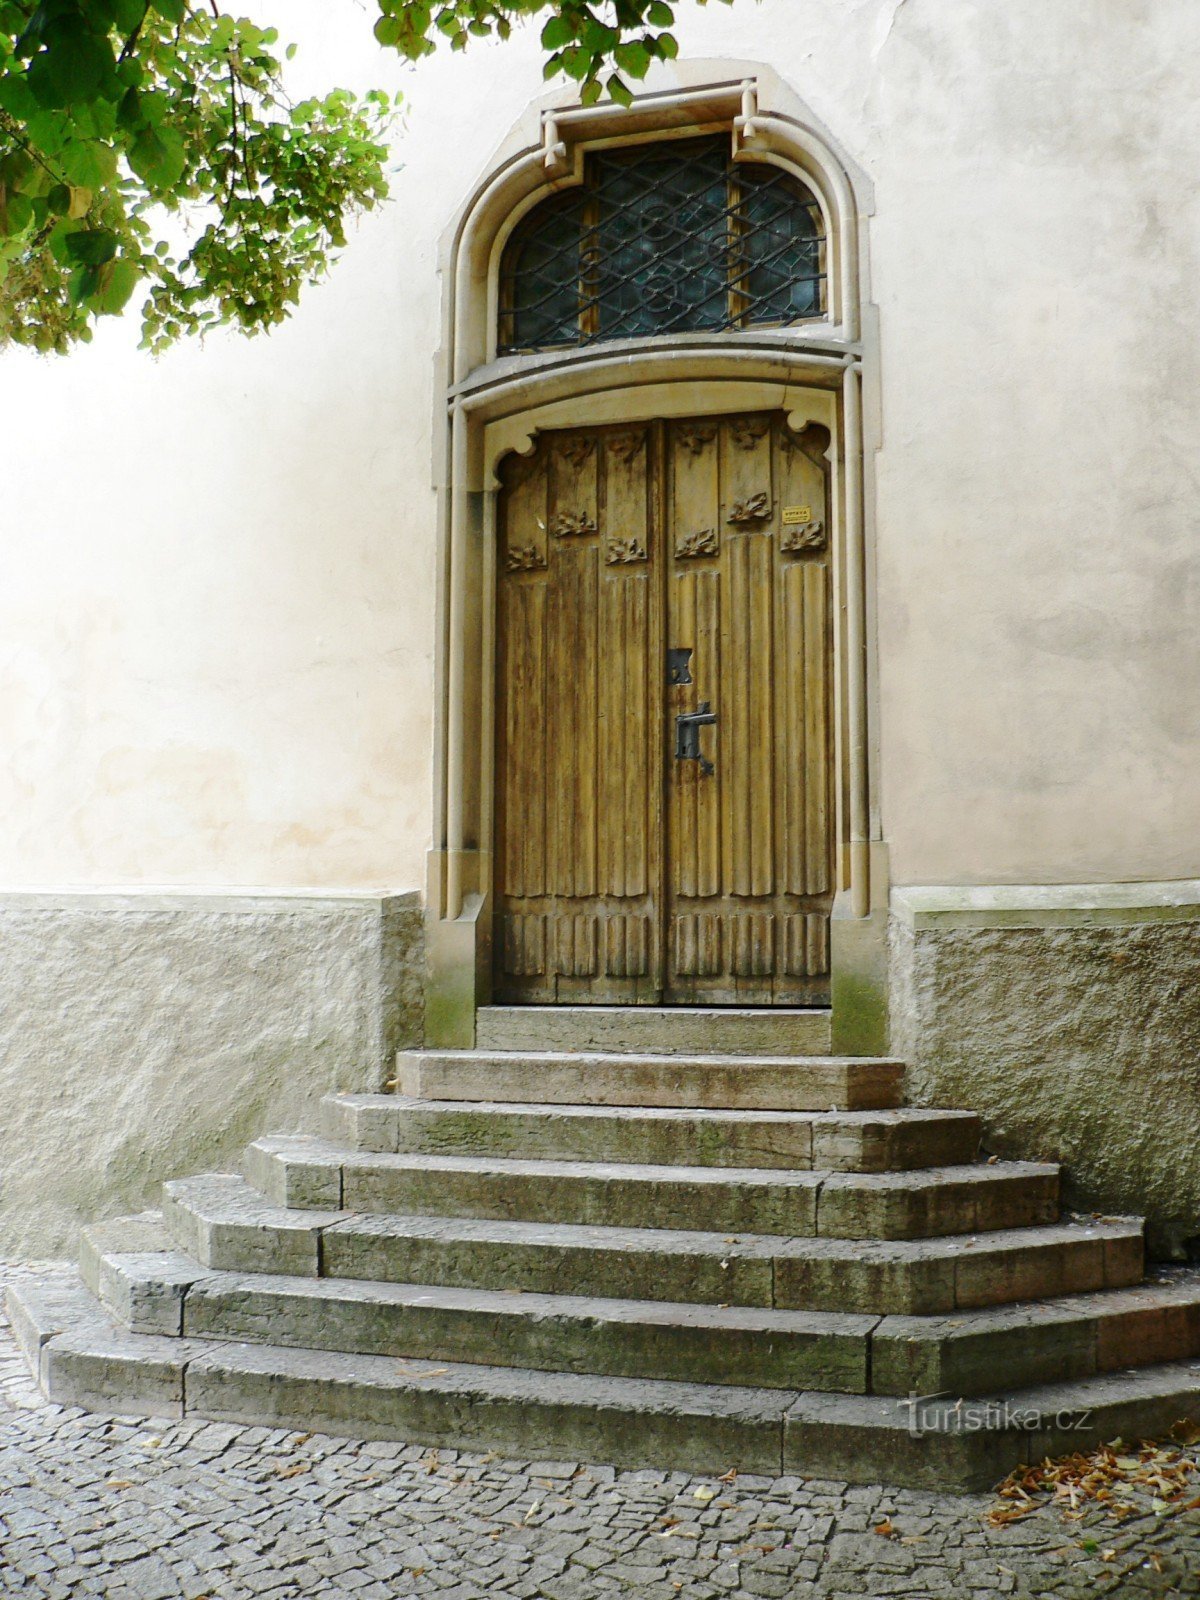 wejście do zakrystii kościoła, który został nowo otwarty po 1901 r. wg